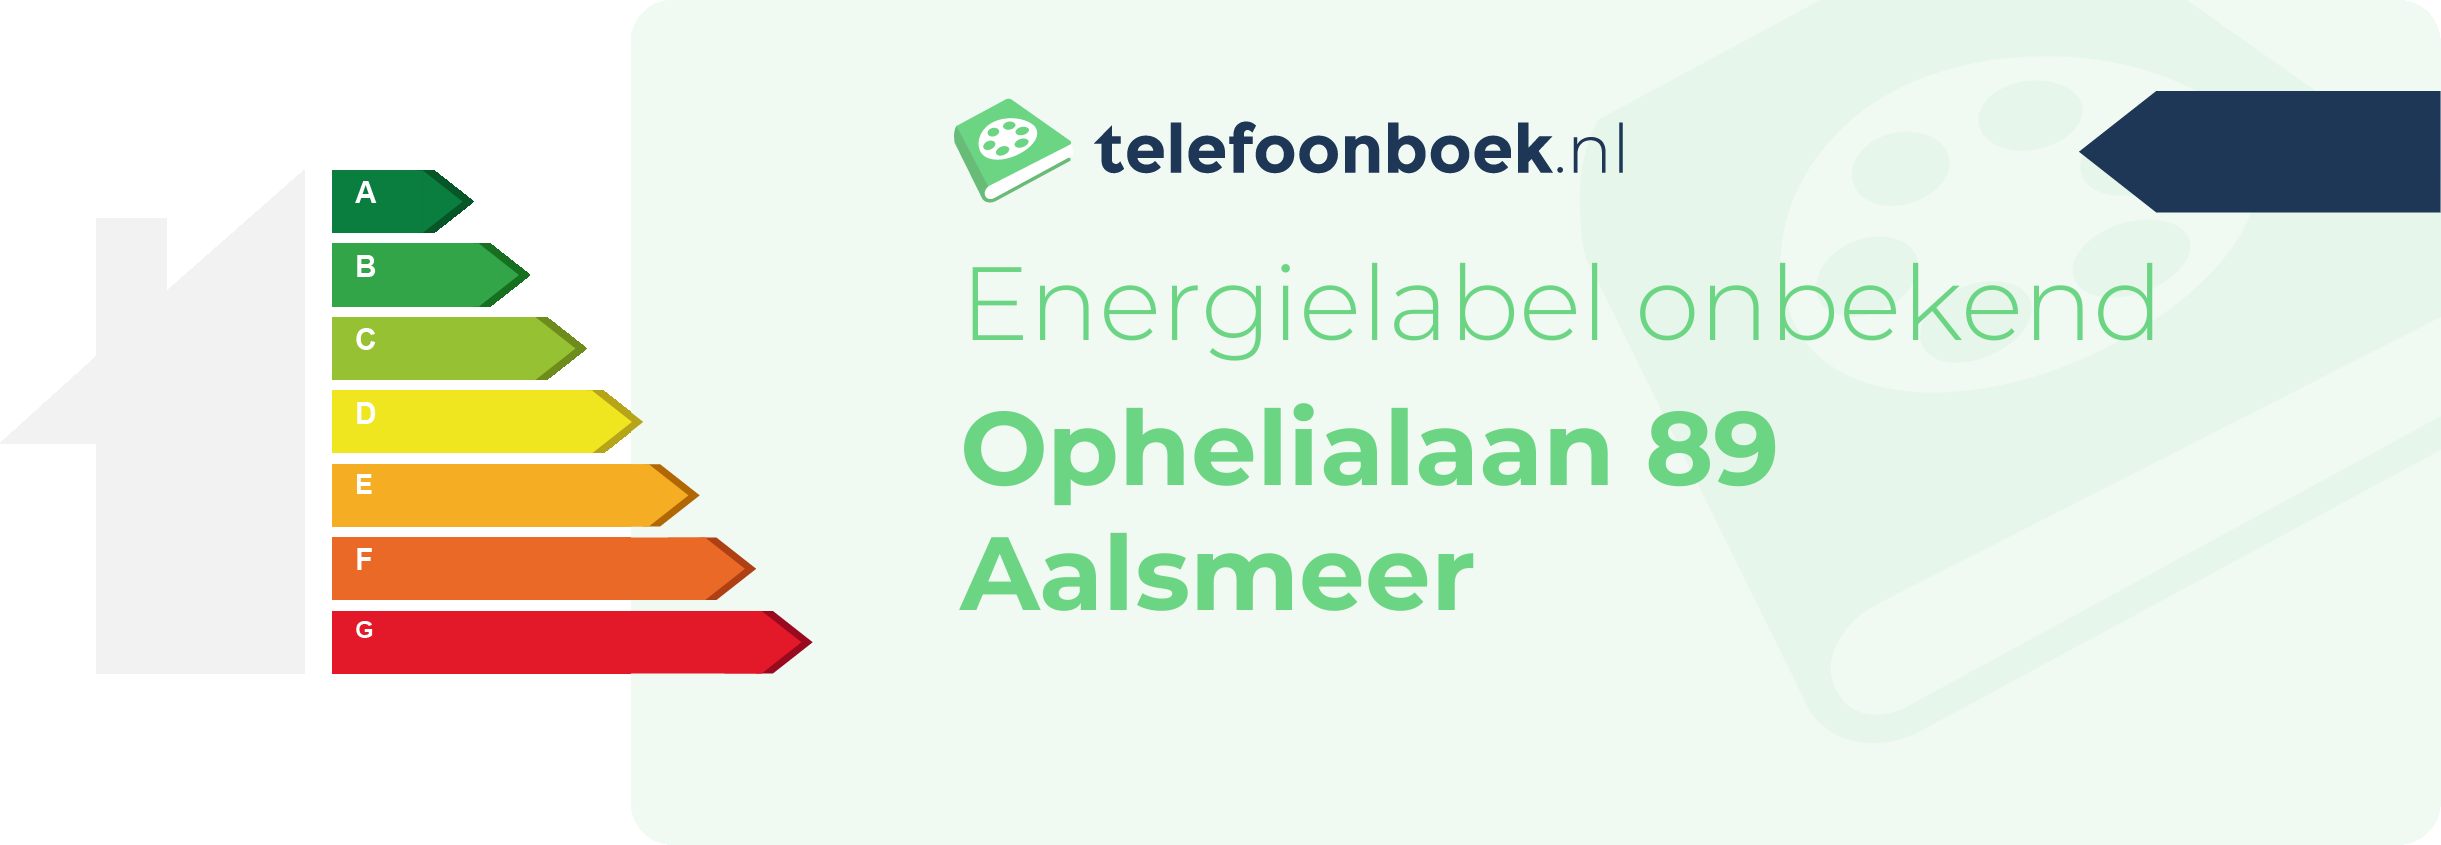 Energielabel Ophelialaan 89 Aalsmeer